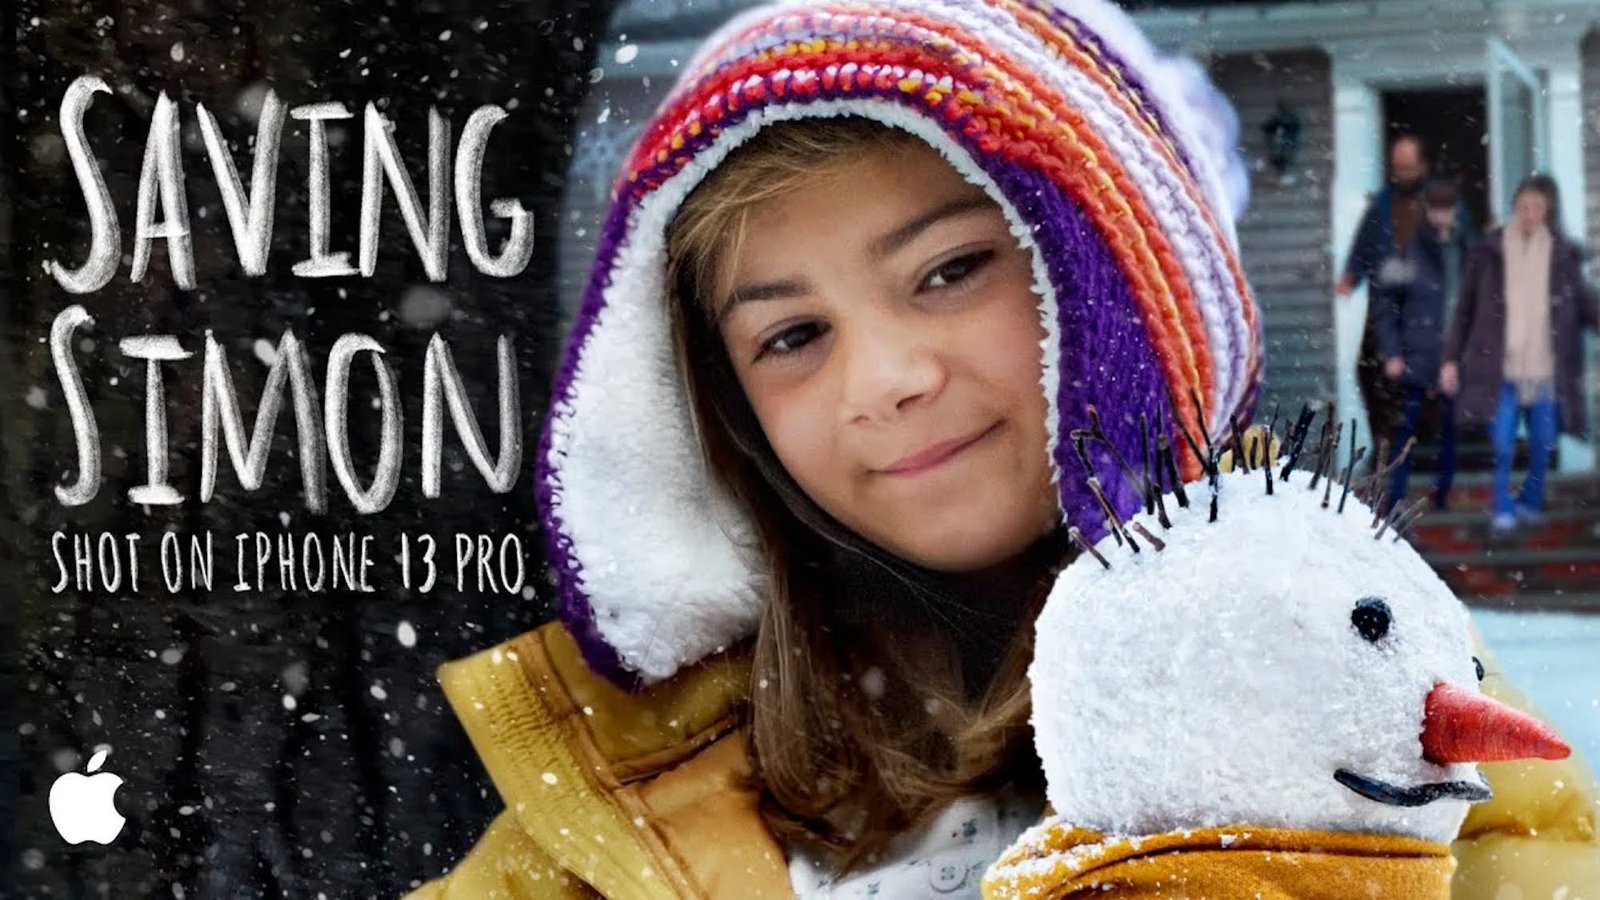 El anuncio navideño “Saving Simon” de Apple se grabó en su totalidad en el iPhone 13 Pro